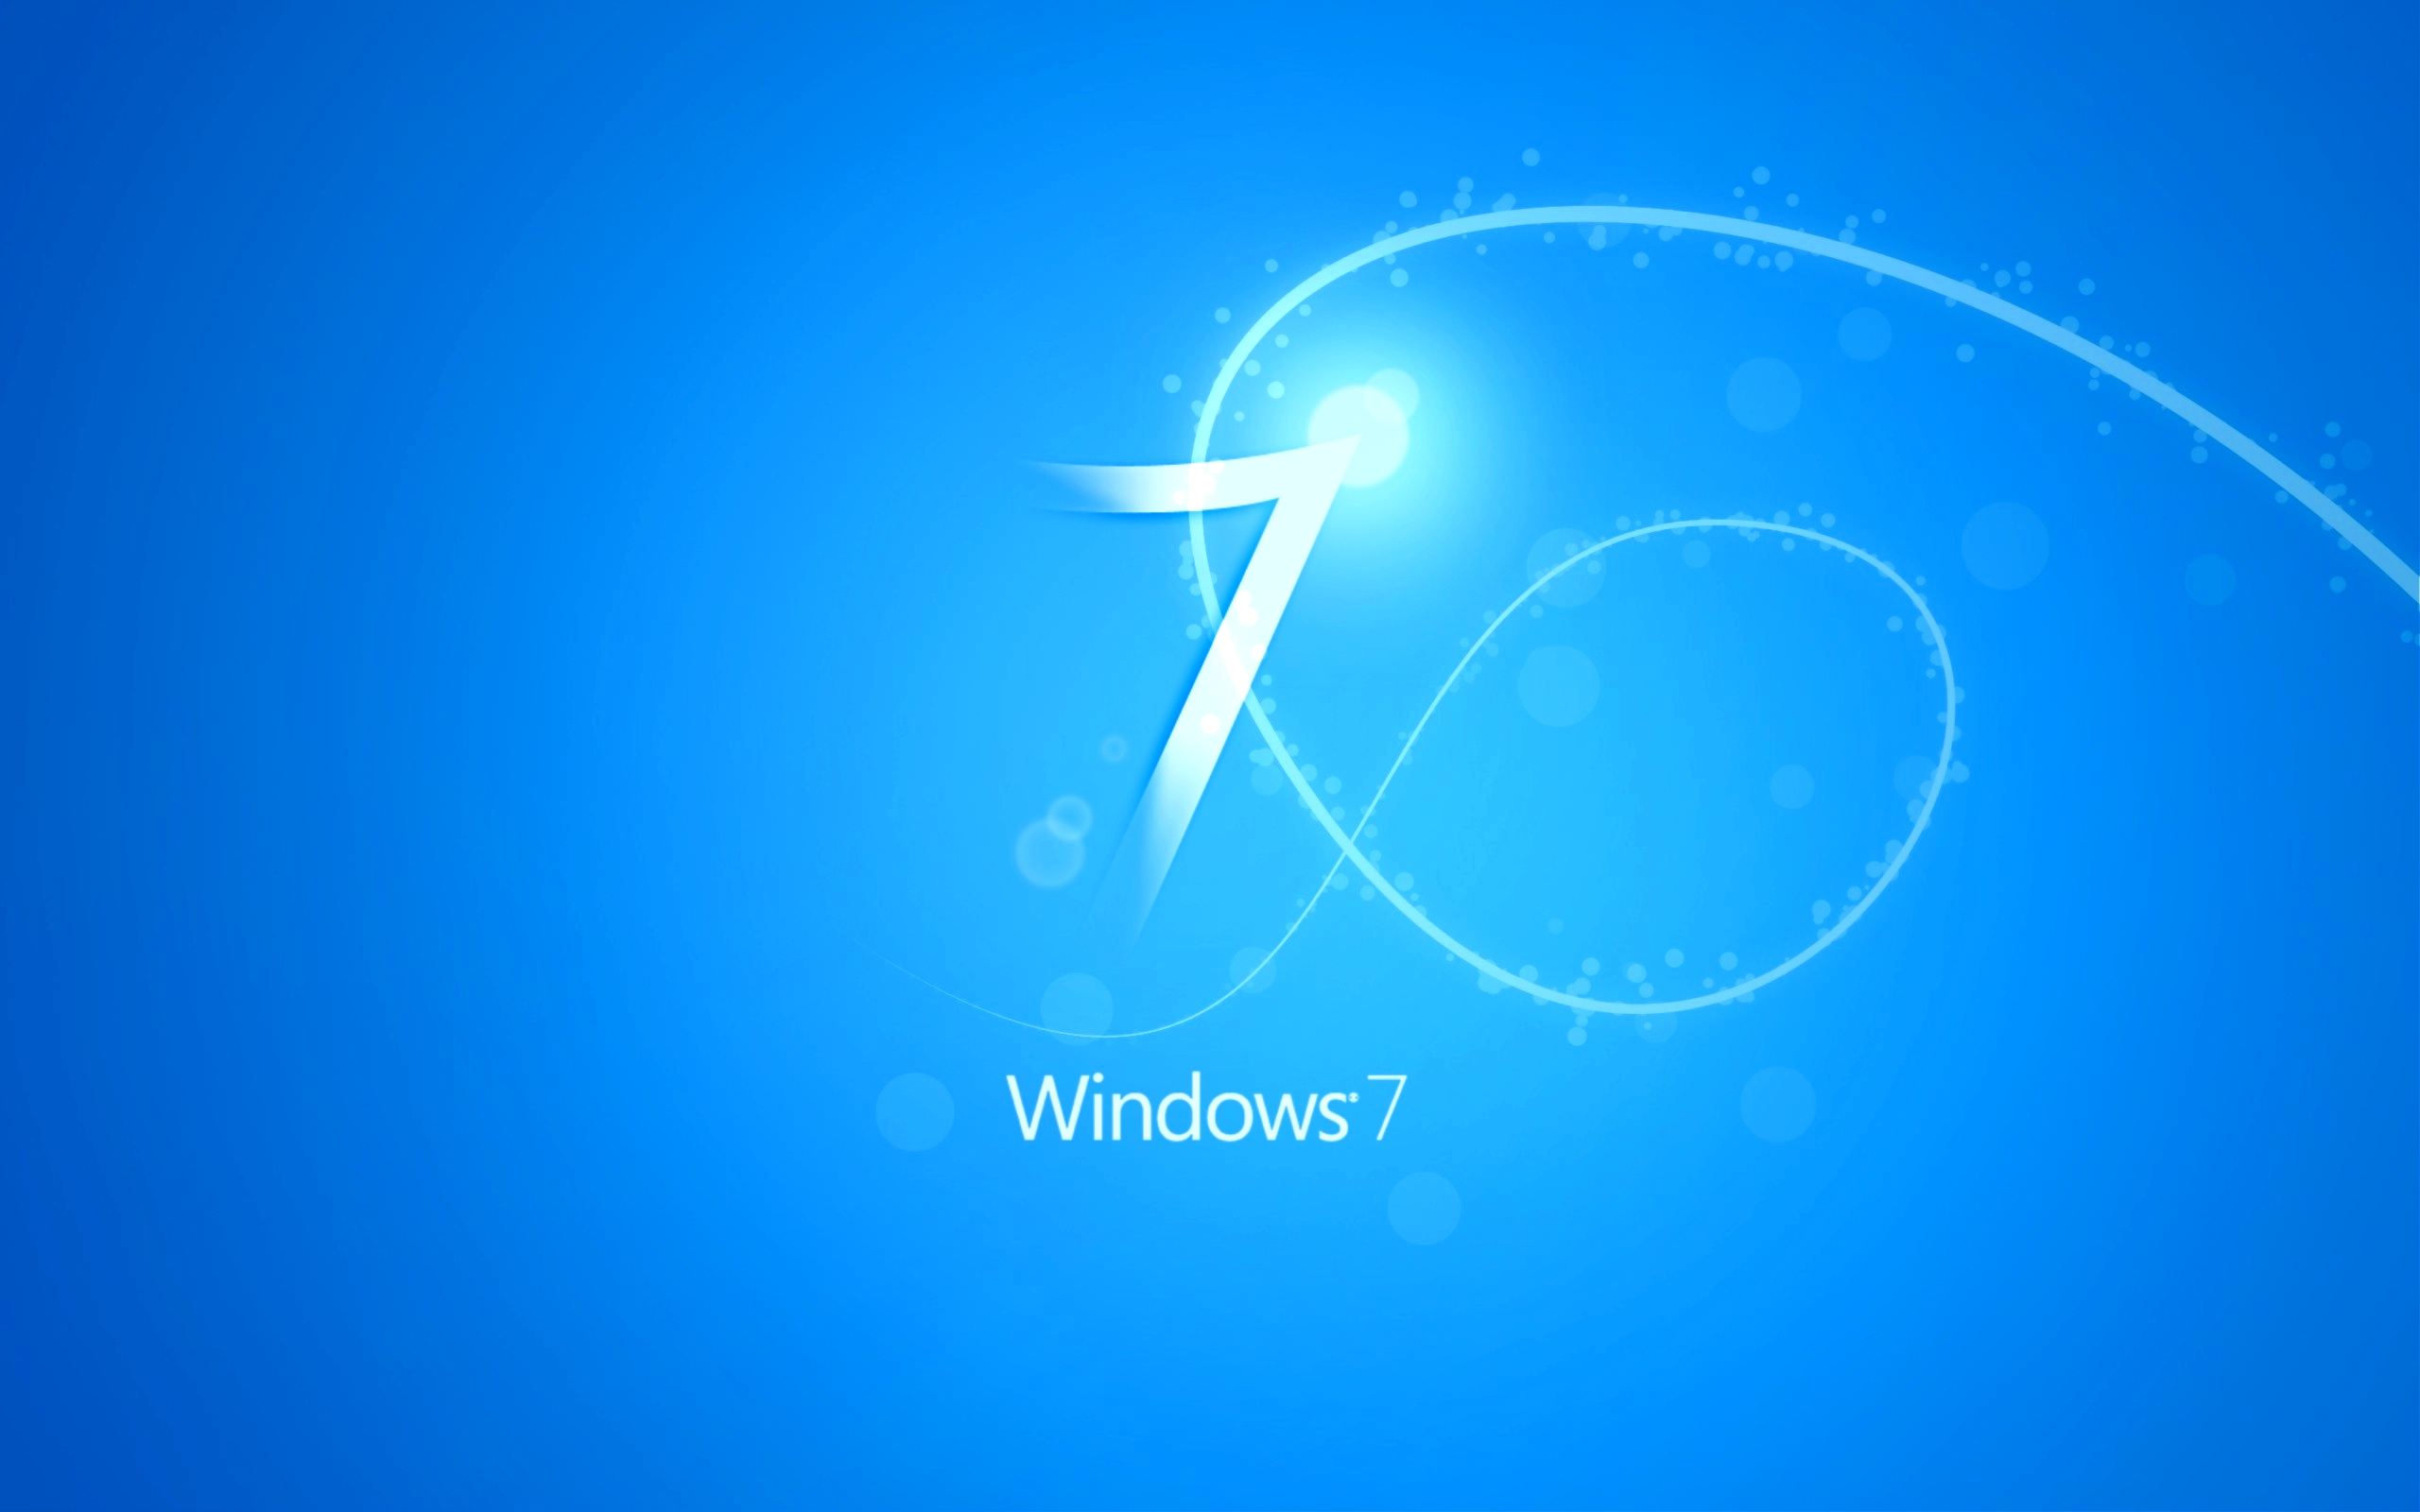 Tải hình nền Windows 7 miễn phí: Khám phá bộ sưu tập hình nền Windows 7 miễn phí tuyệt đẹp, đầy màu sắc cho máy tính của bạn. Thưởng thức và tải xuống ngay hôm nay!